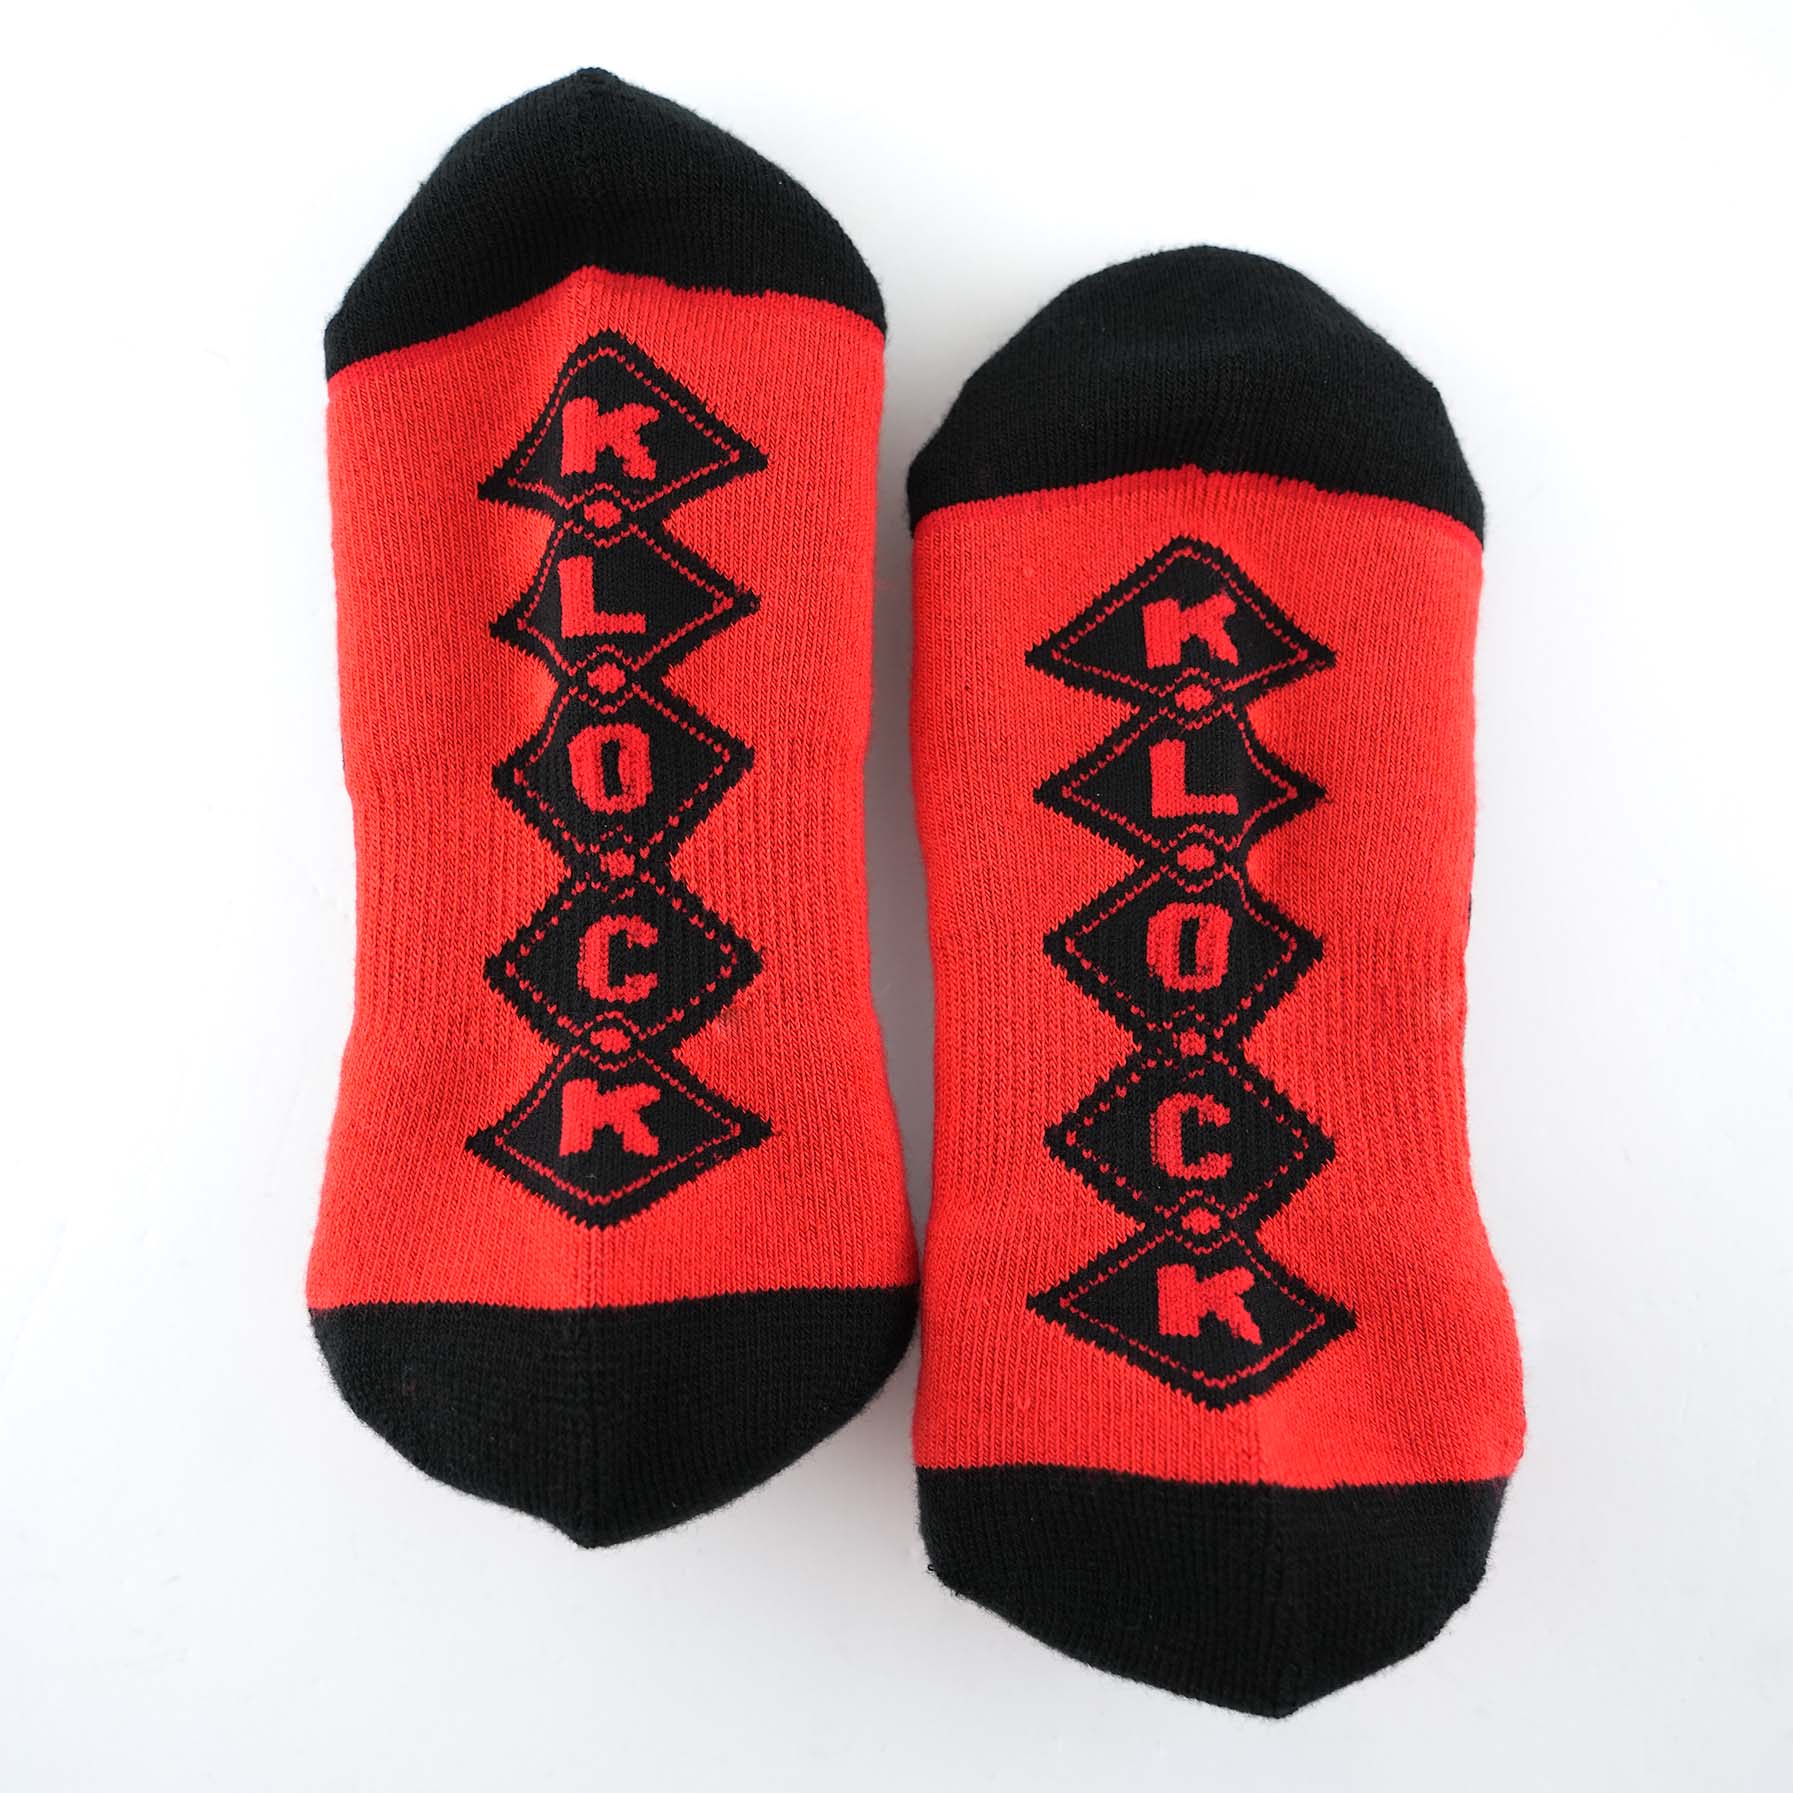 Klock Werks x Fuel Klock Low Profile Socks in Red with Klock on the feet(Red with Klock on the feet)